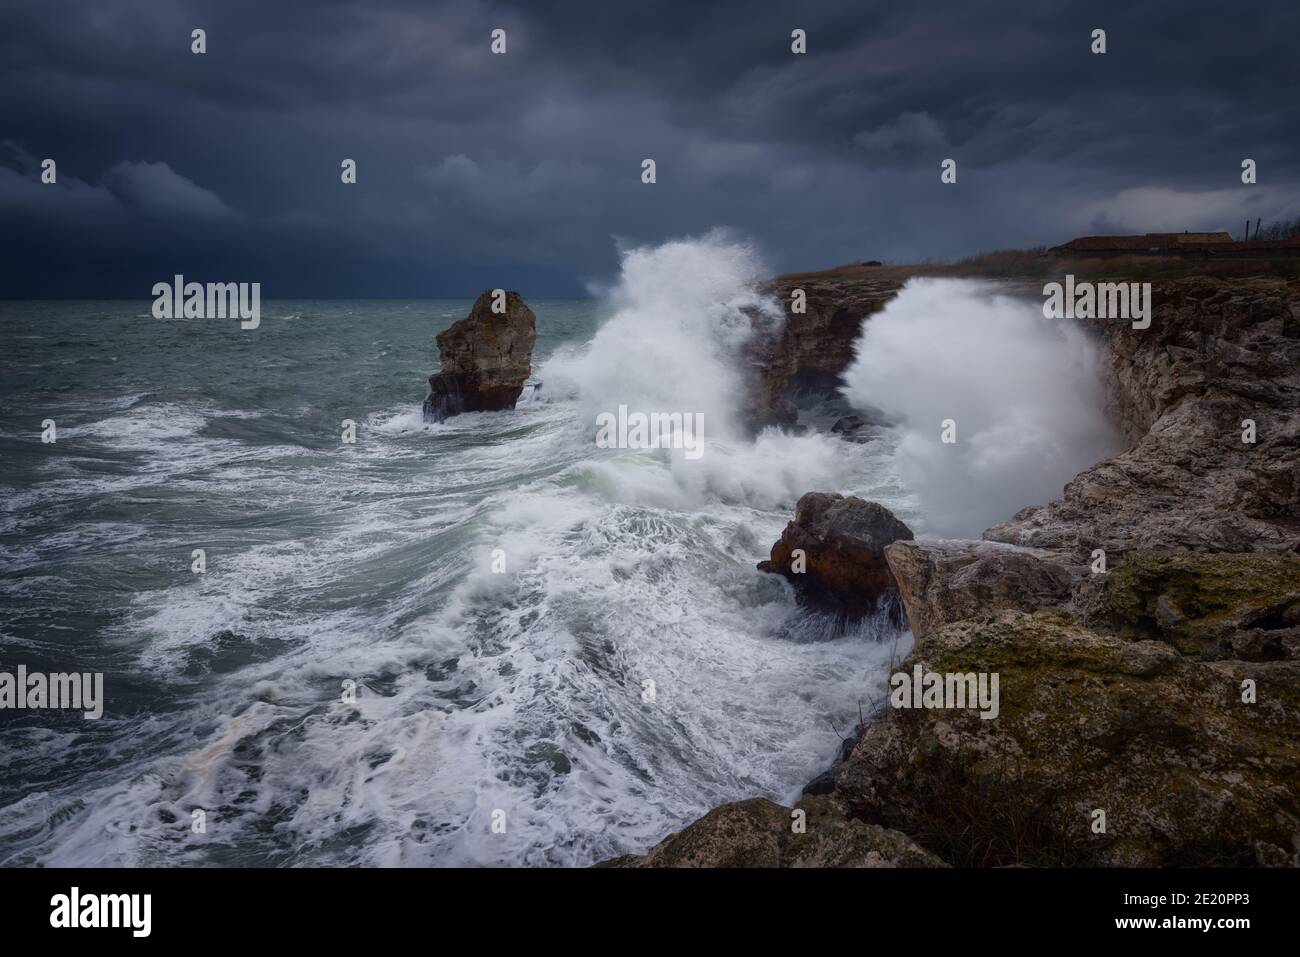 Dramatische Natur Hintergrund - große Wellen und dunklen Felsen in stürmischen Meer, stürmisches Wetter. Dramatische Szene. Kontrastierende Farben.schöne Naturlandschaft Stockfoto